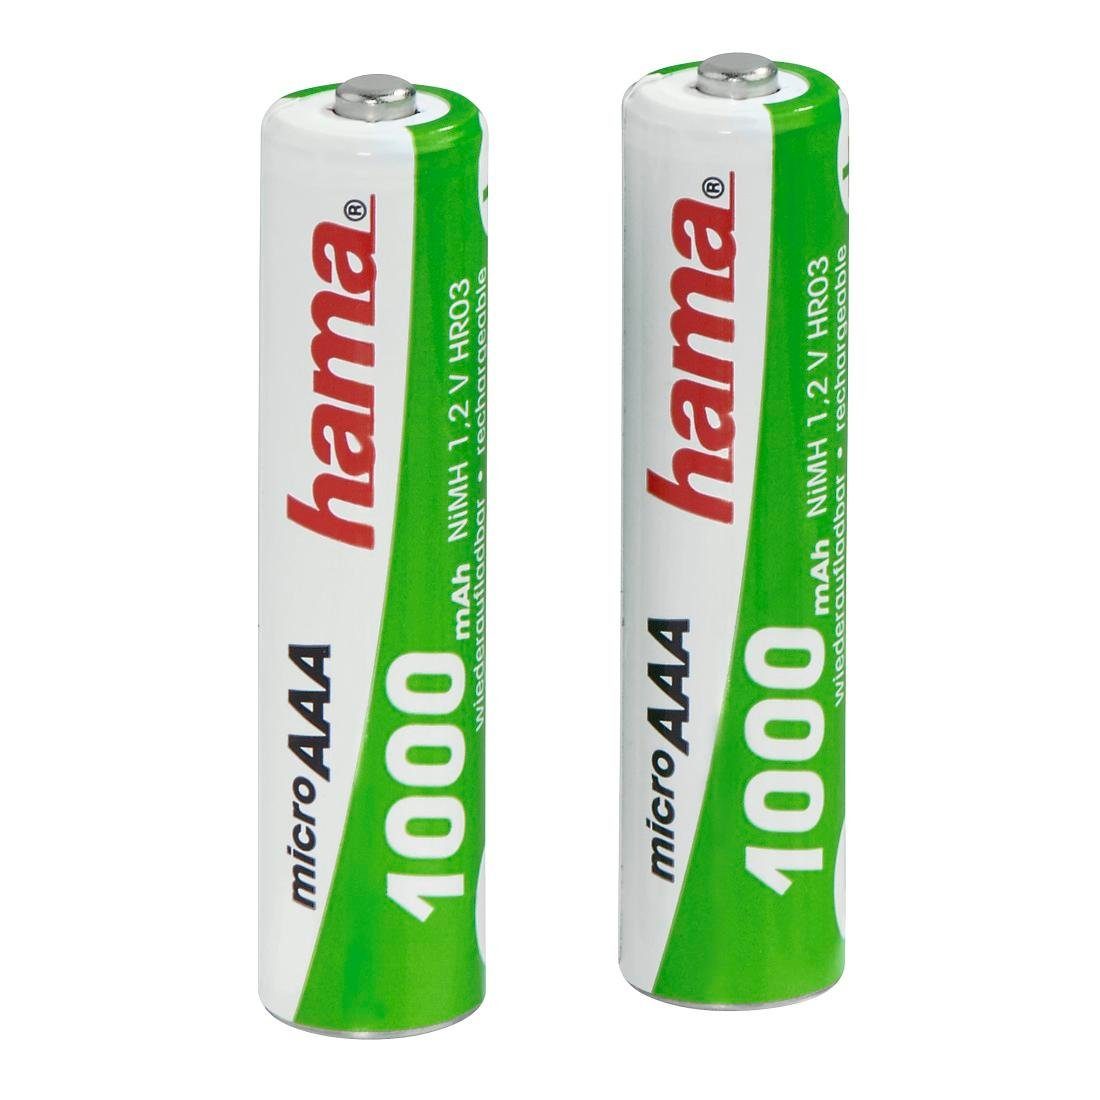 Hama »Wiederaufladbare Batterien für schnurlose Telefone, 2xAAA NiMH Akkus,  1000 mAh, 1,2 V« Akkupacks online kaufen | OTTO